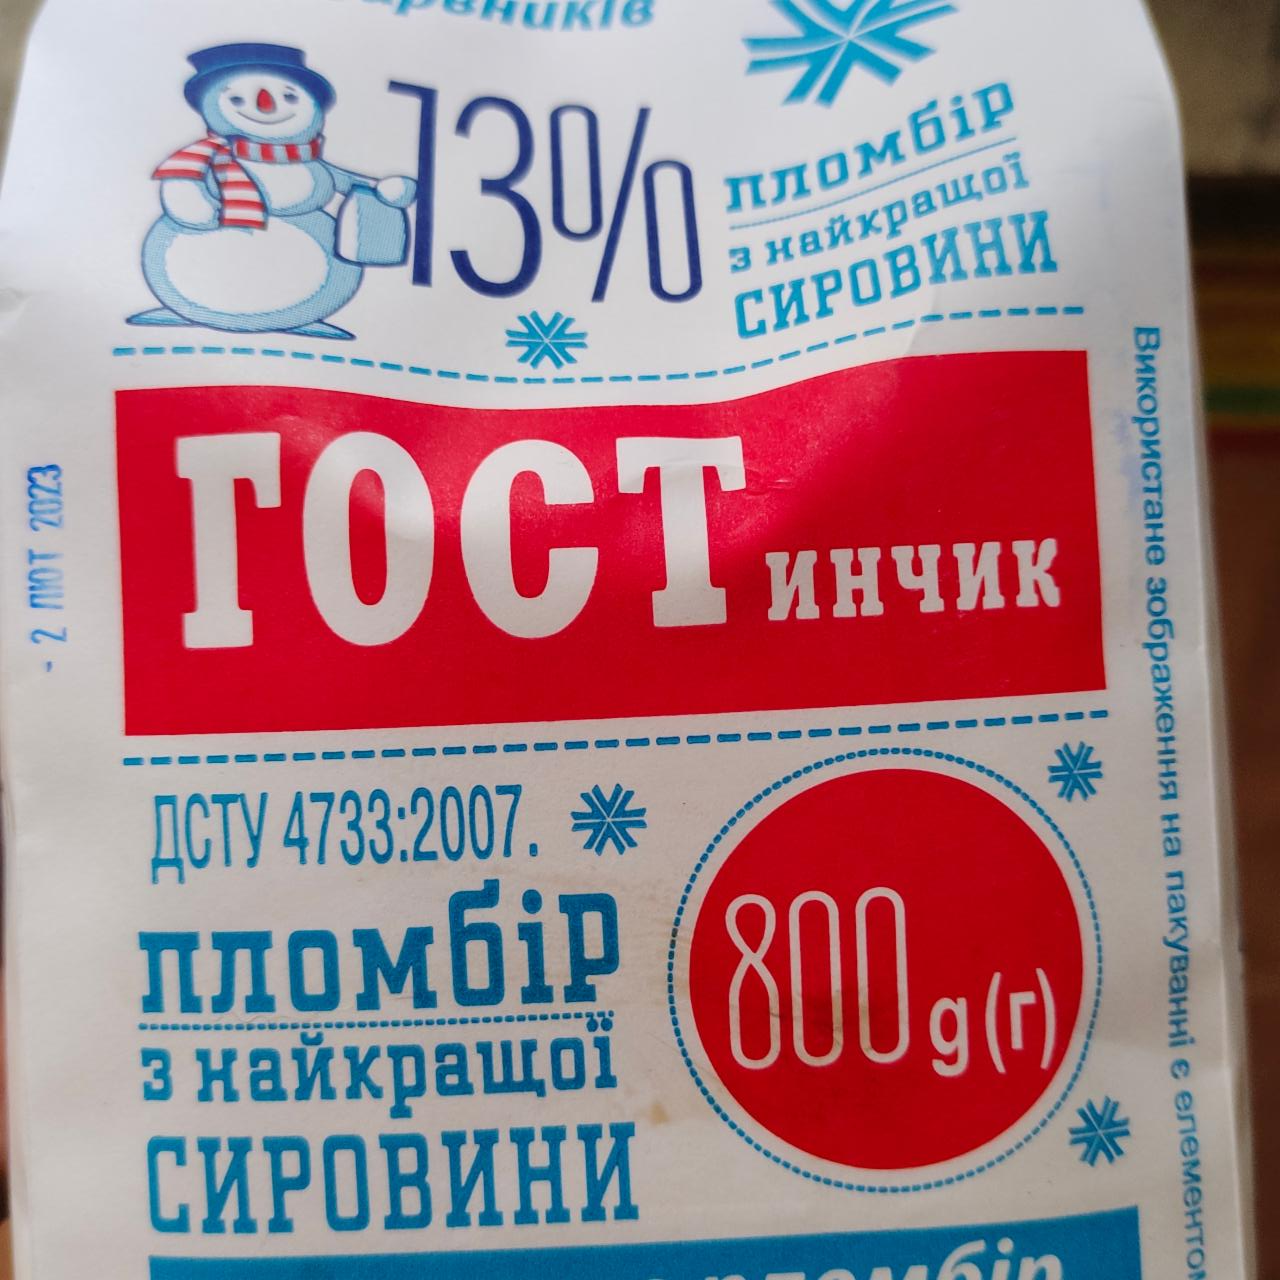 Фото - Мороженое 13% пломбир Гостинчик СвитАйс